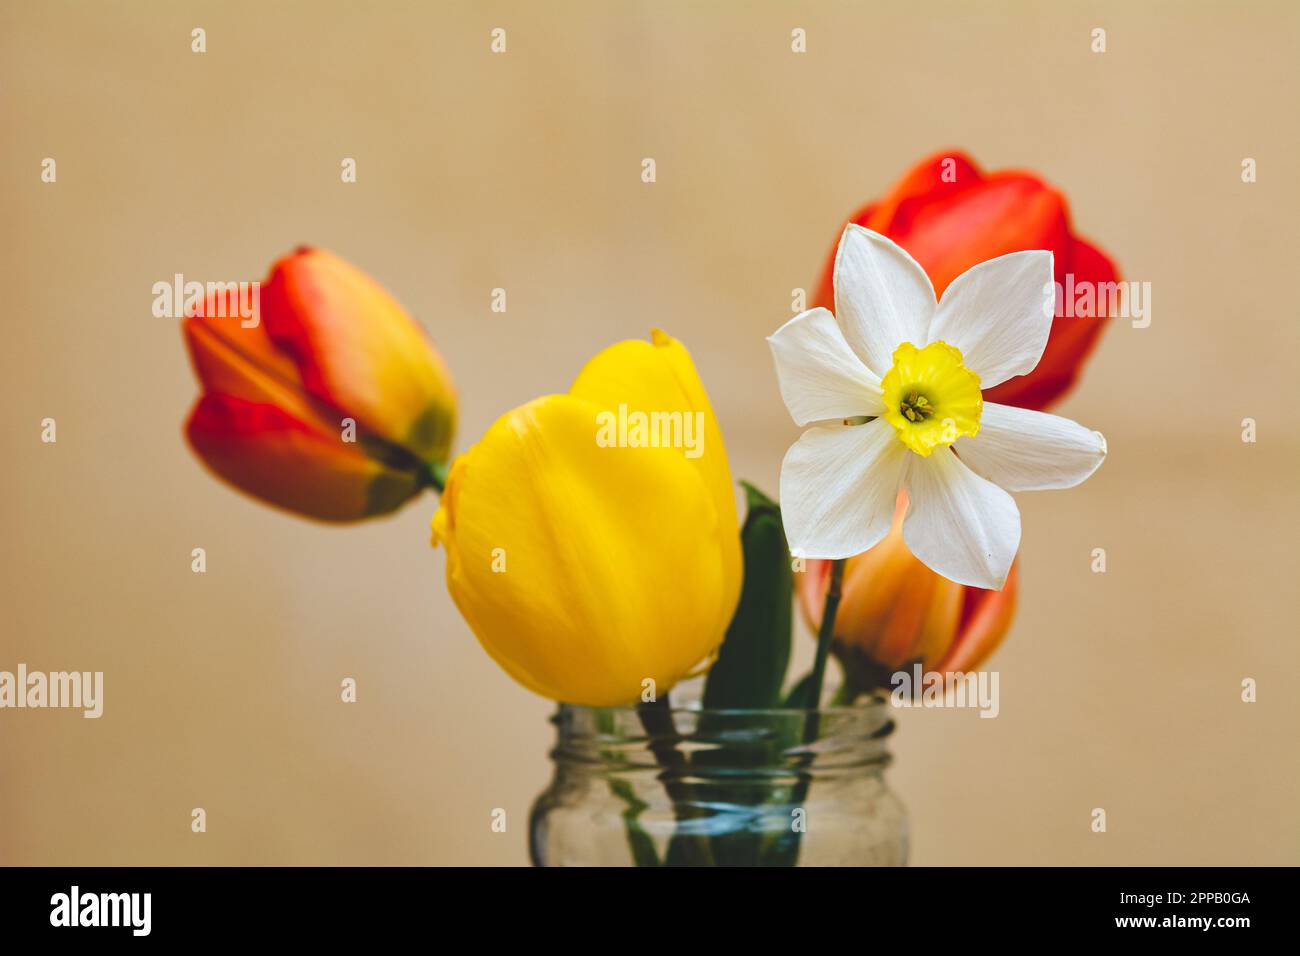 Narciso e tulipani in un vaso di vetro su sfondo giallo, profondità di campo bassa, fuoco selettivo Foto Stock